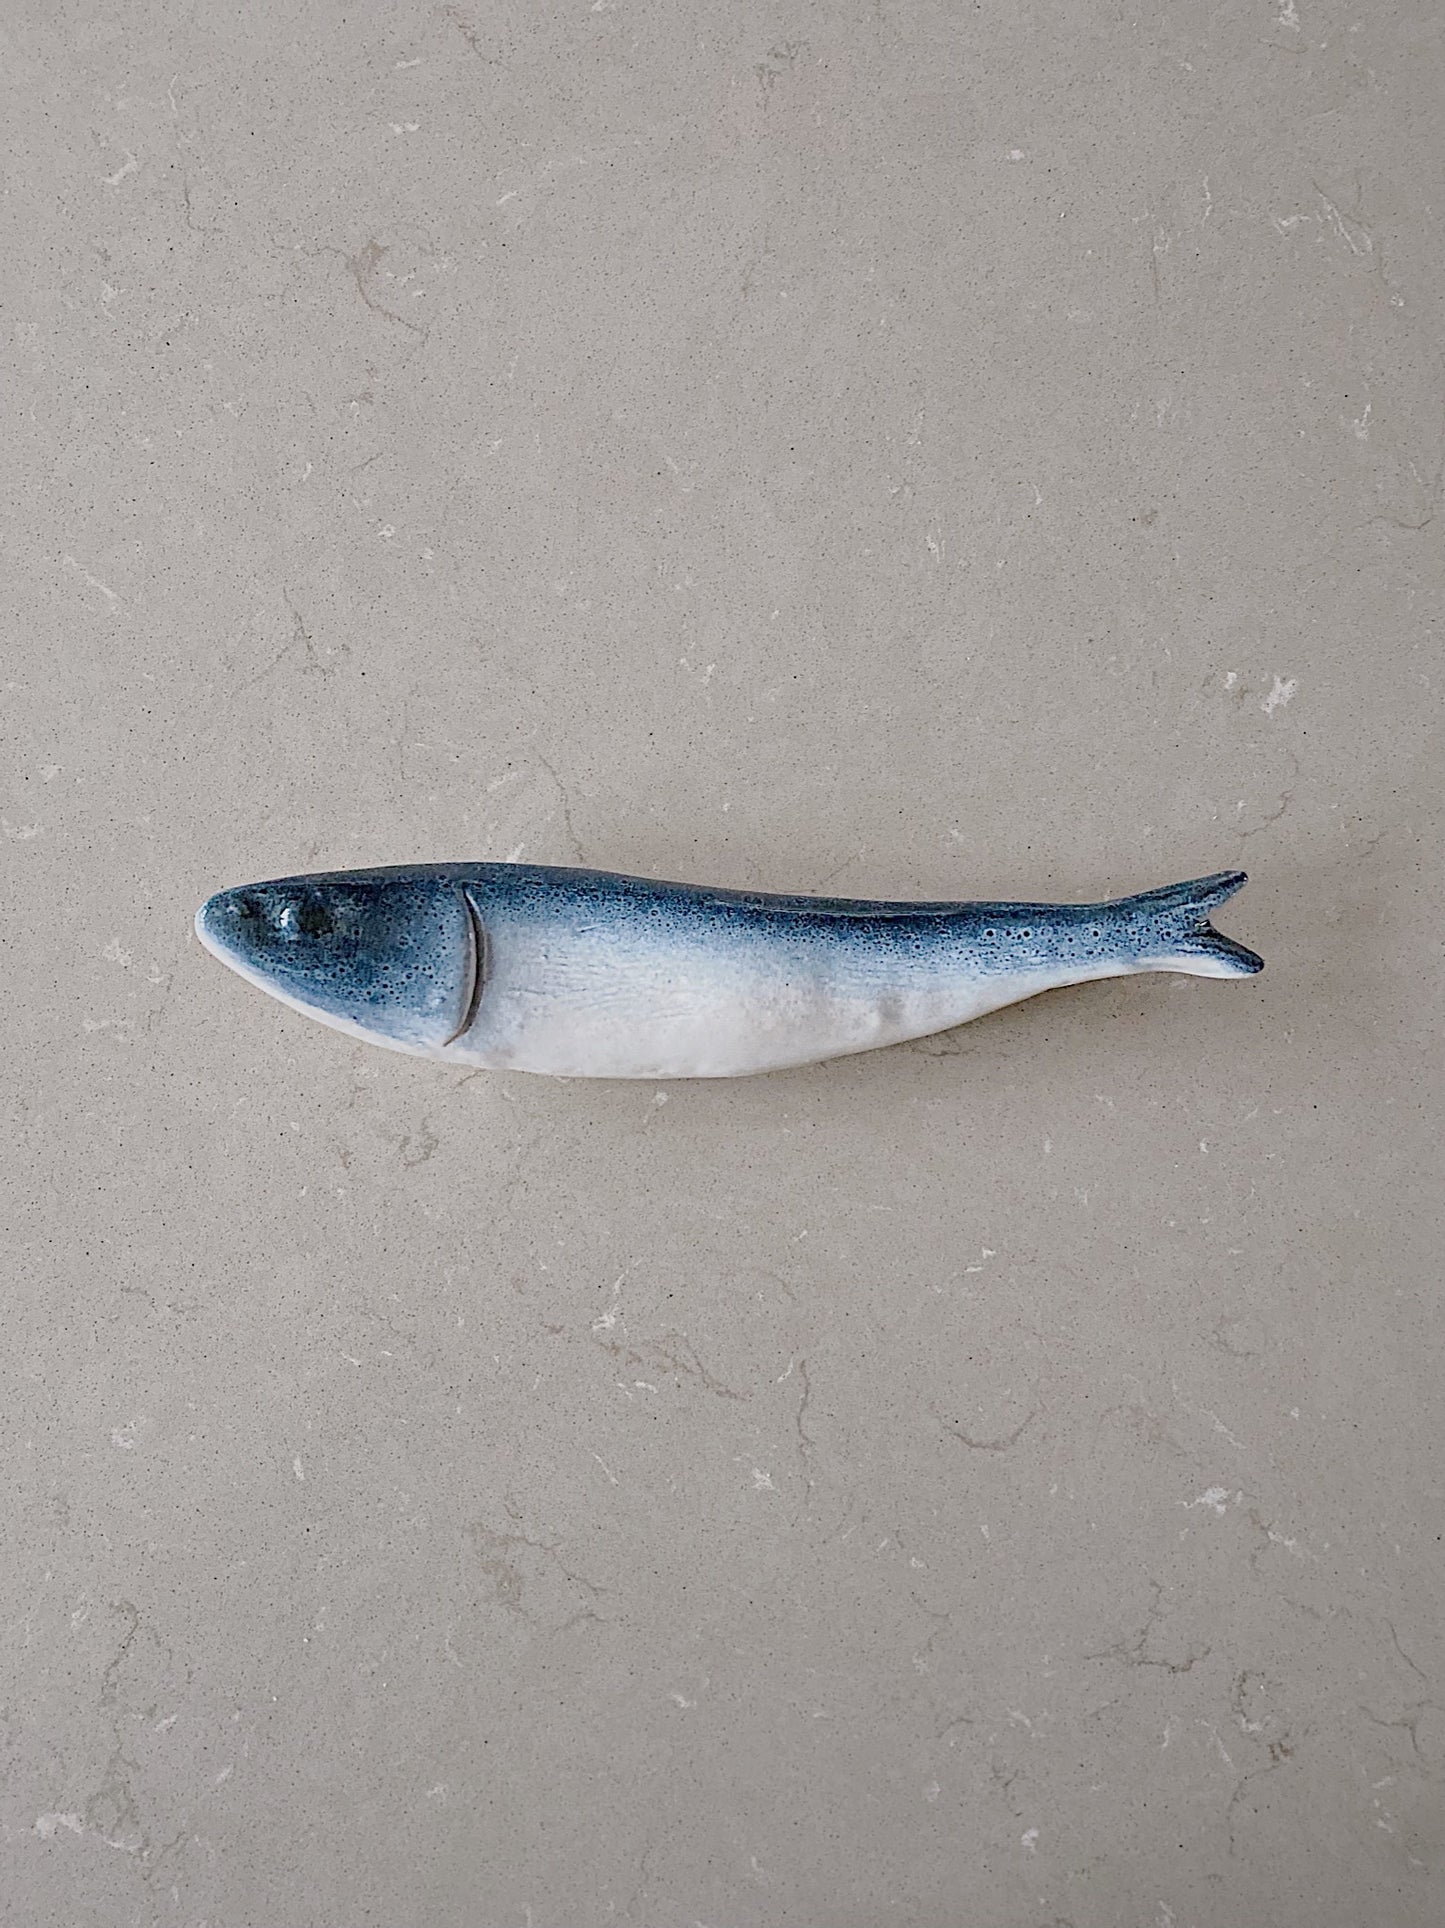 Blå vægfisk (venstre)